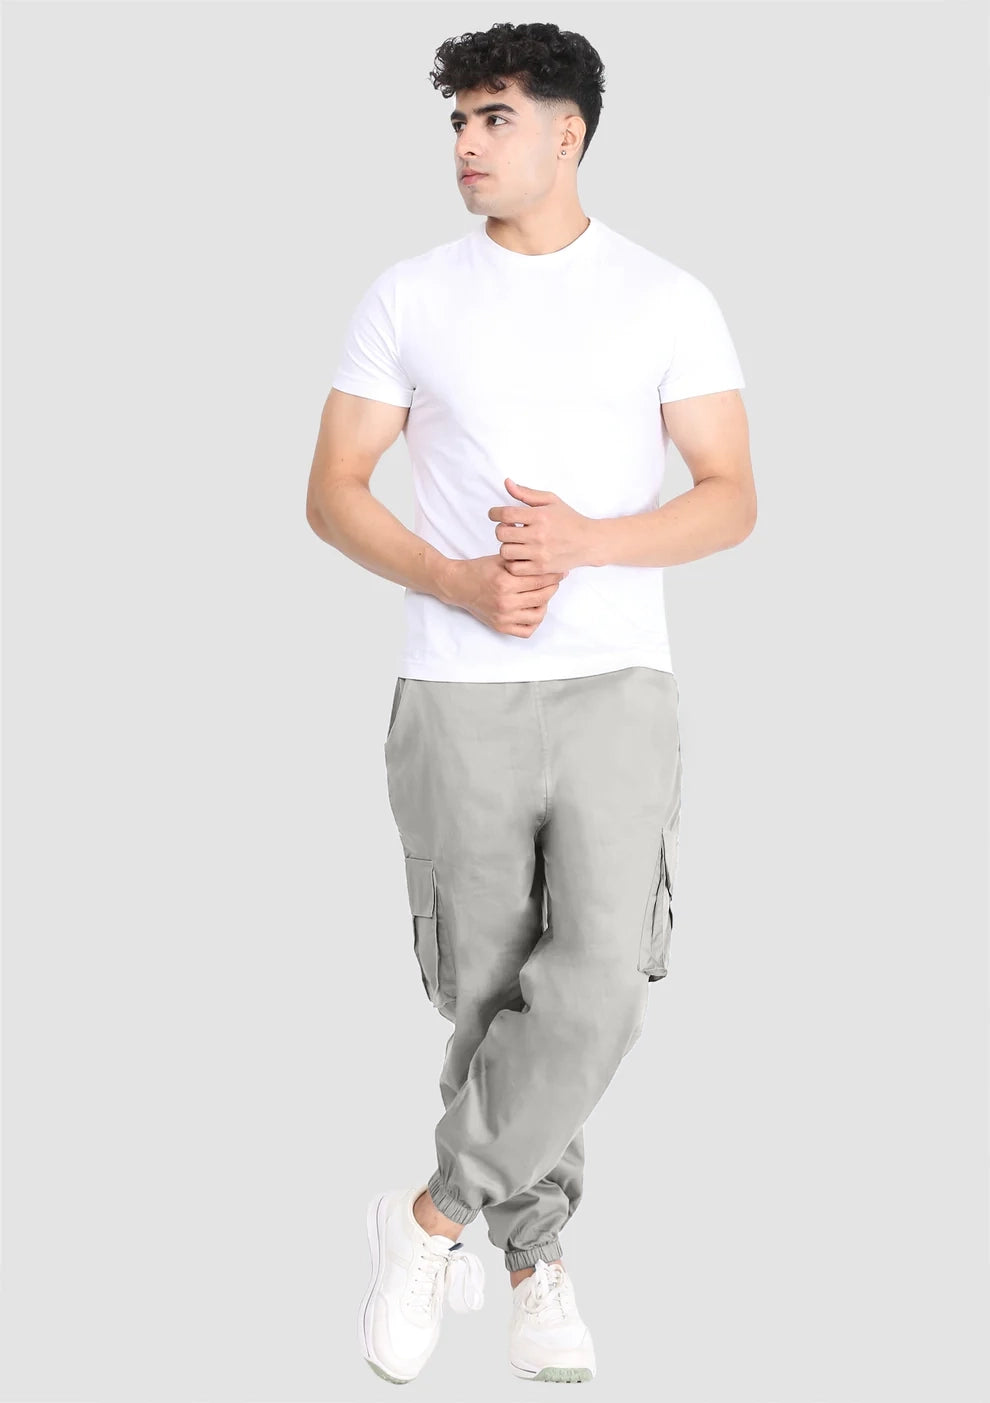 Buy Men White Slim Fit Formal Full Sleeves Formal Shirt Online - 772184 |  Peter England